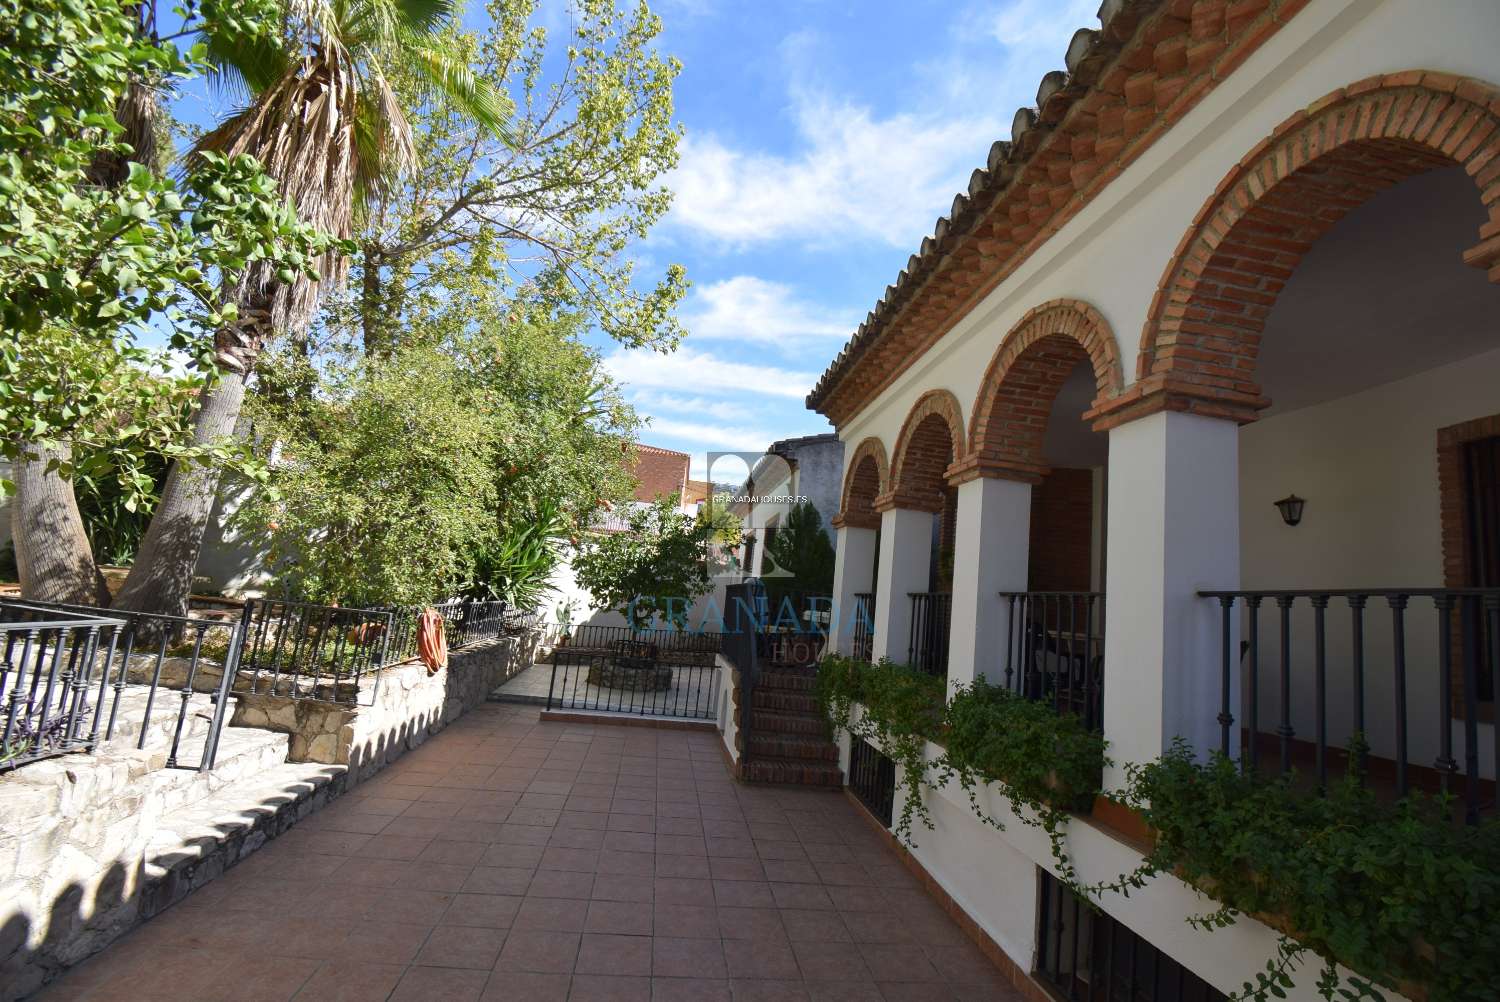 Fristående villa på 15 minuter till Granada stad